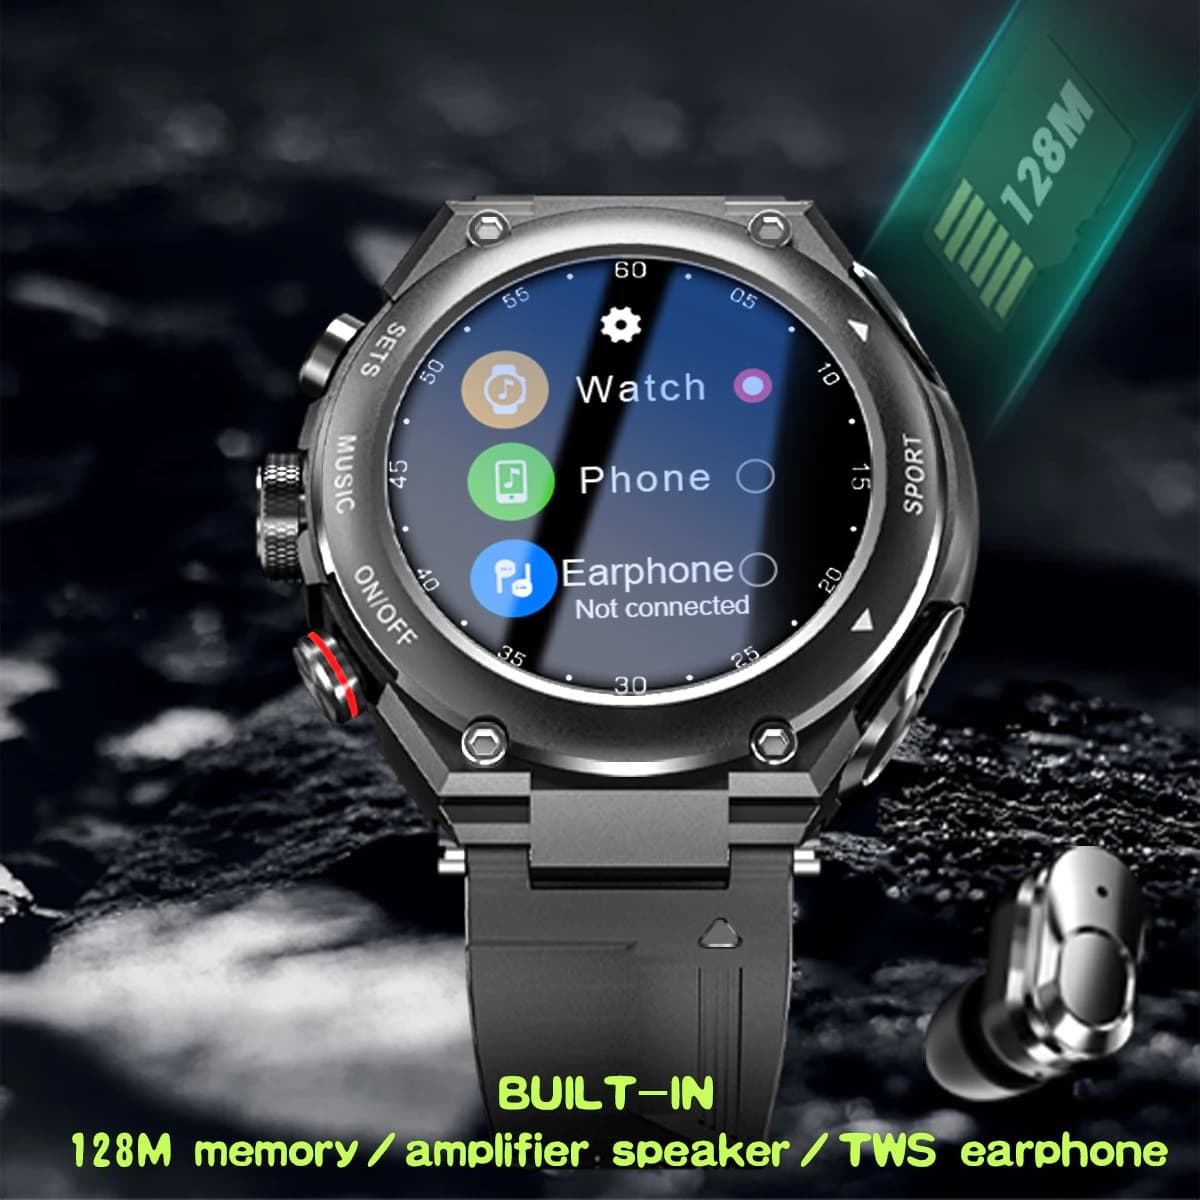 Smartwatch yenye vipokea sauti vinavyobanwa kichwani visivyotumia waya (hufanya kazi na iPhone na Android) GB 